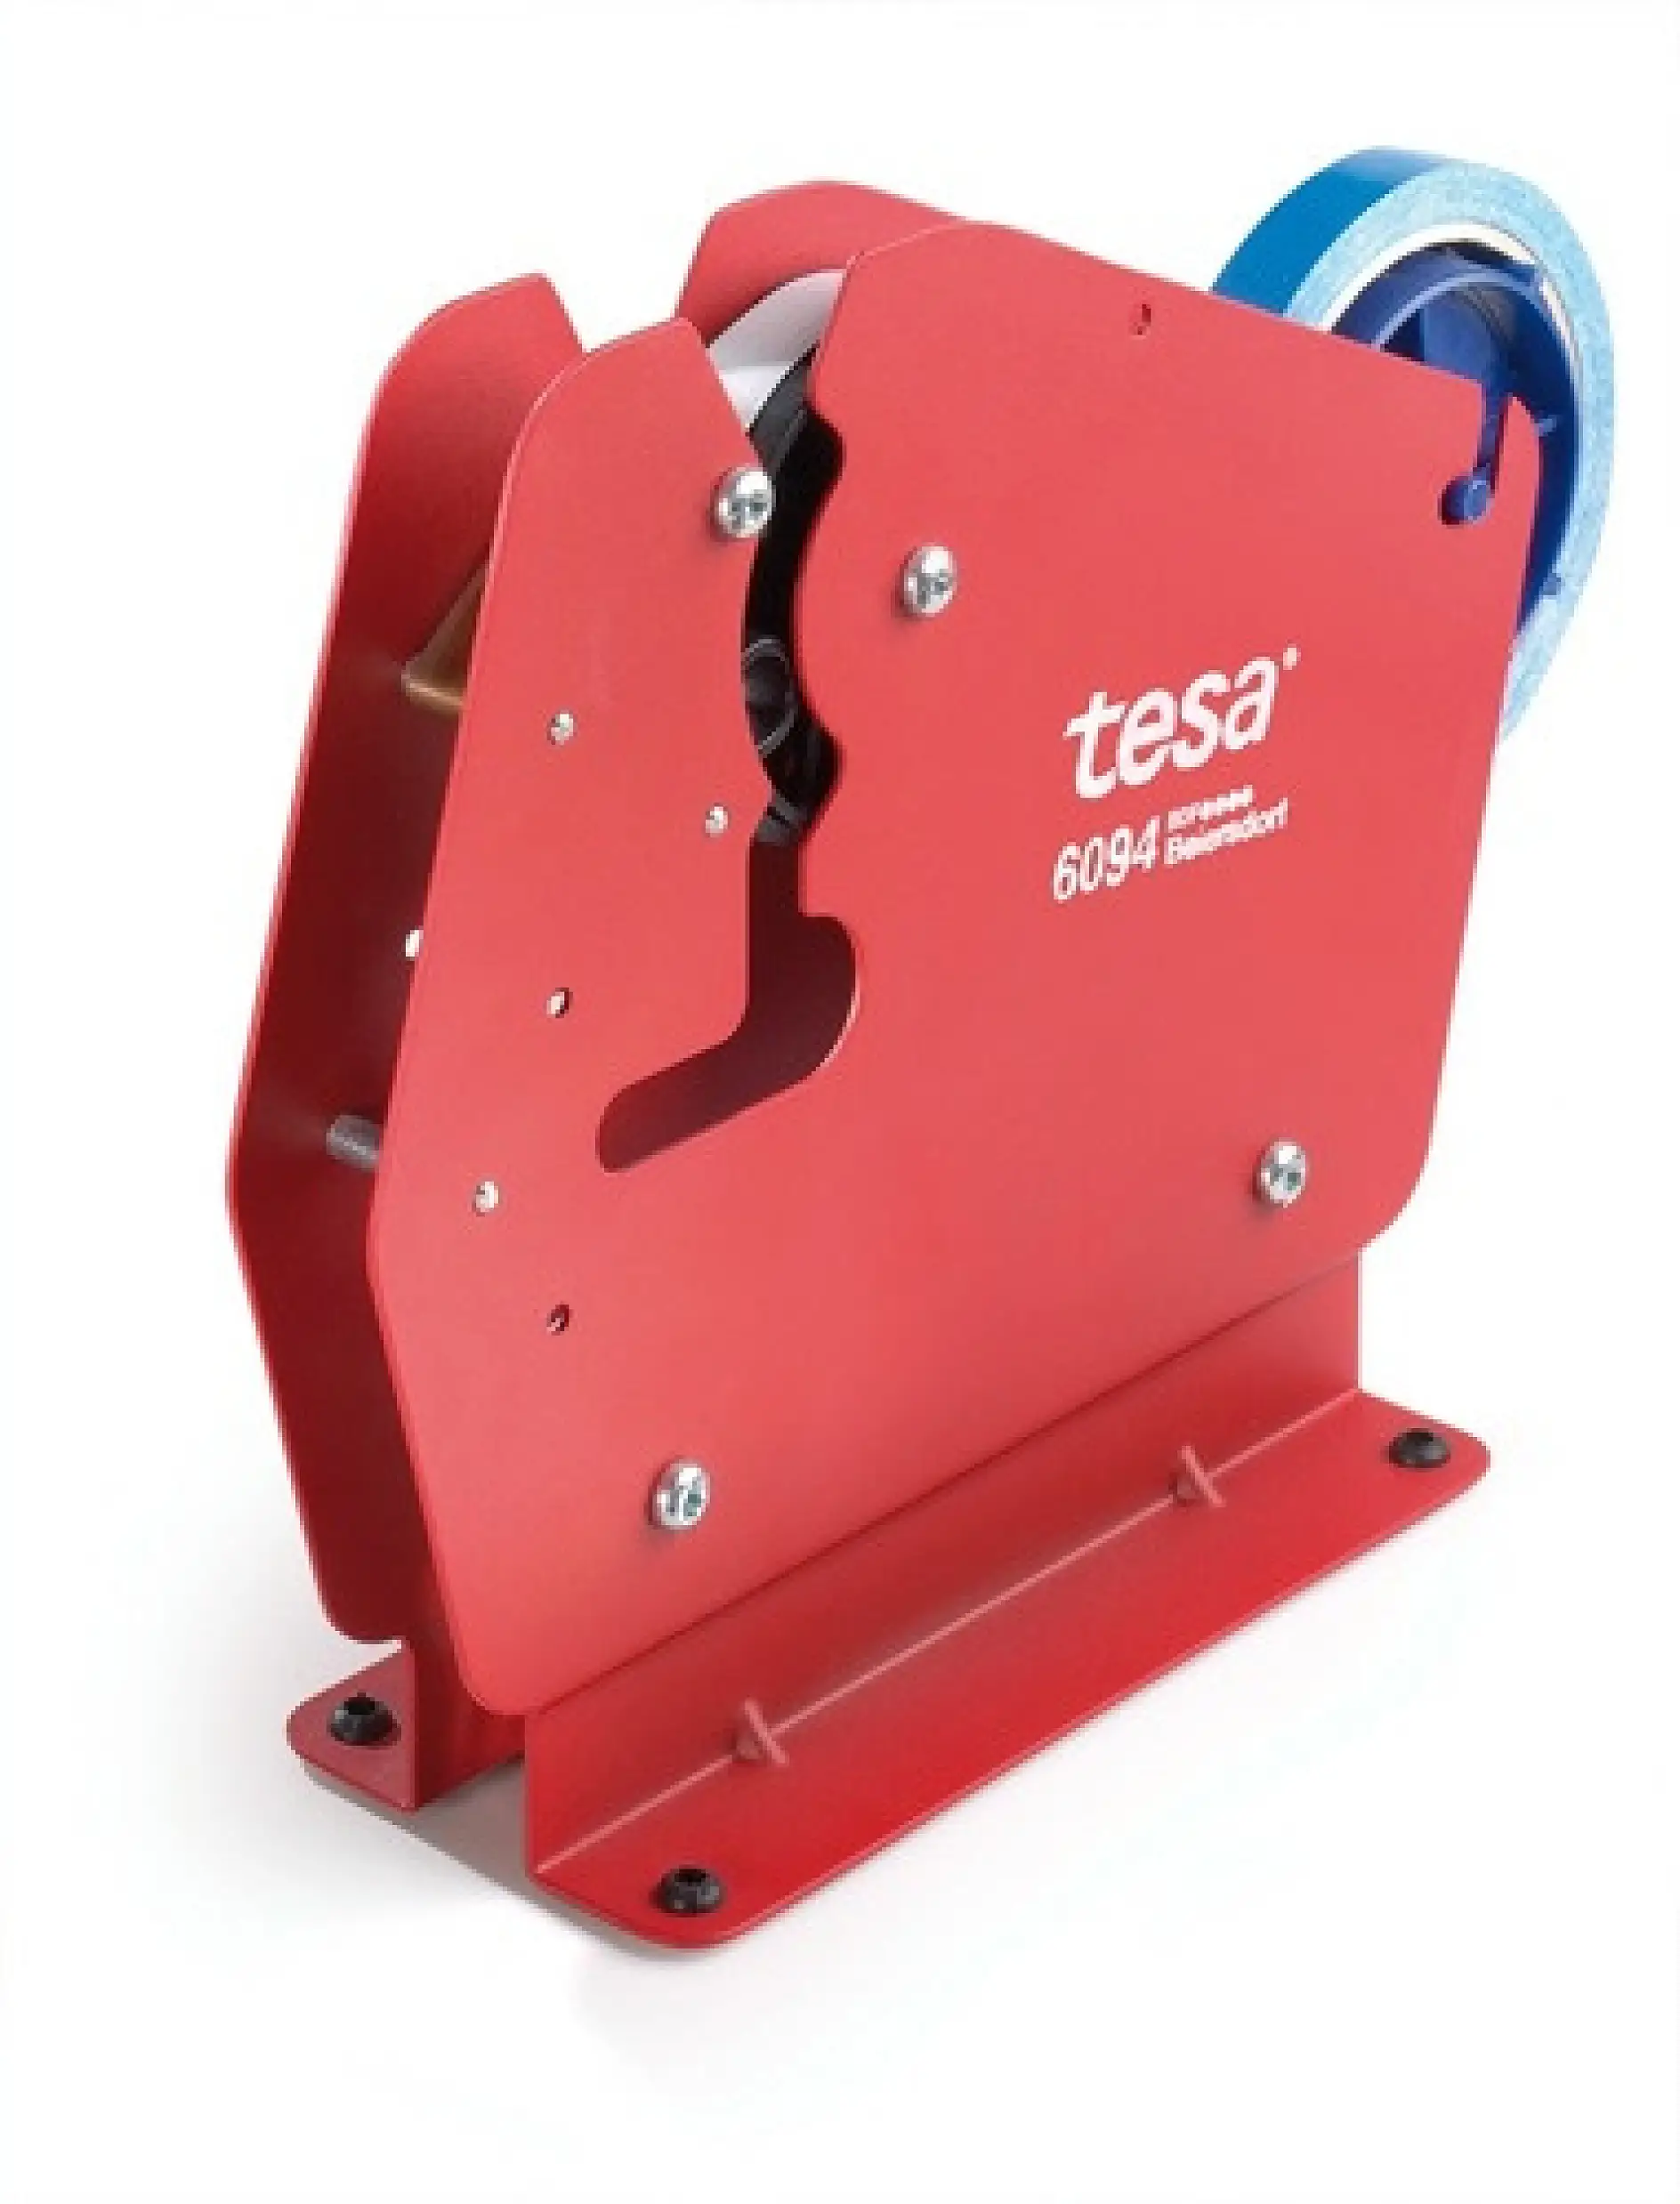 The tesa 4204 dispenser voor het sluiten van zakken is ontwikkeld voor het effectief sluiten van elke zak van papier of plastic.